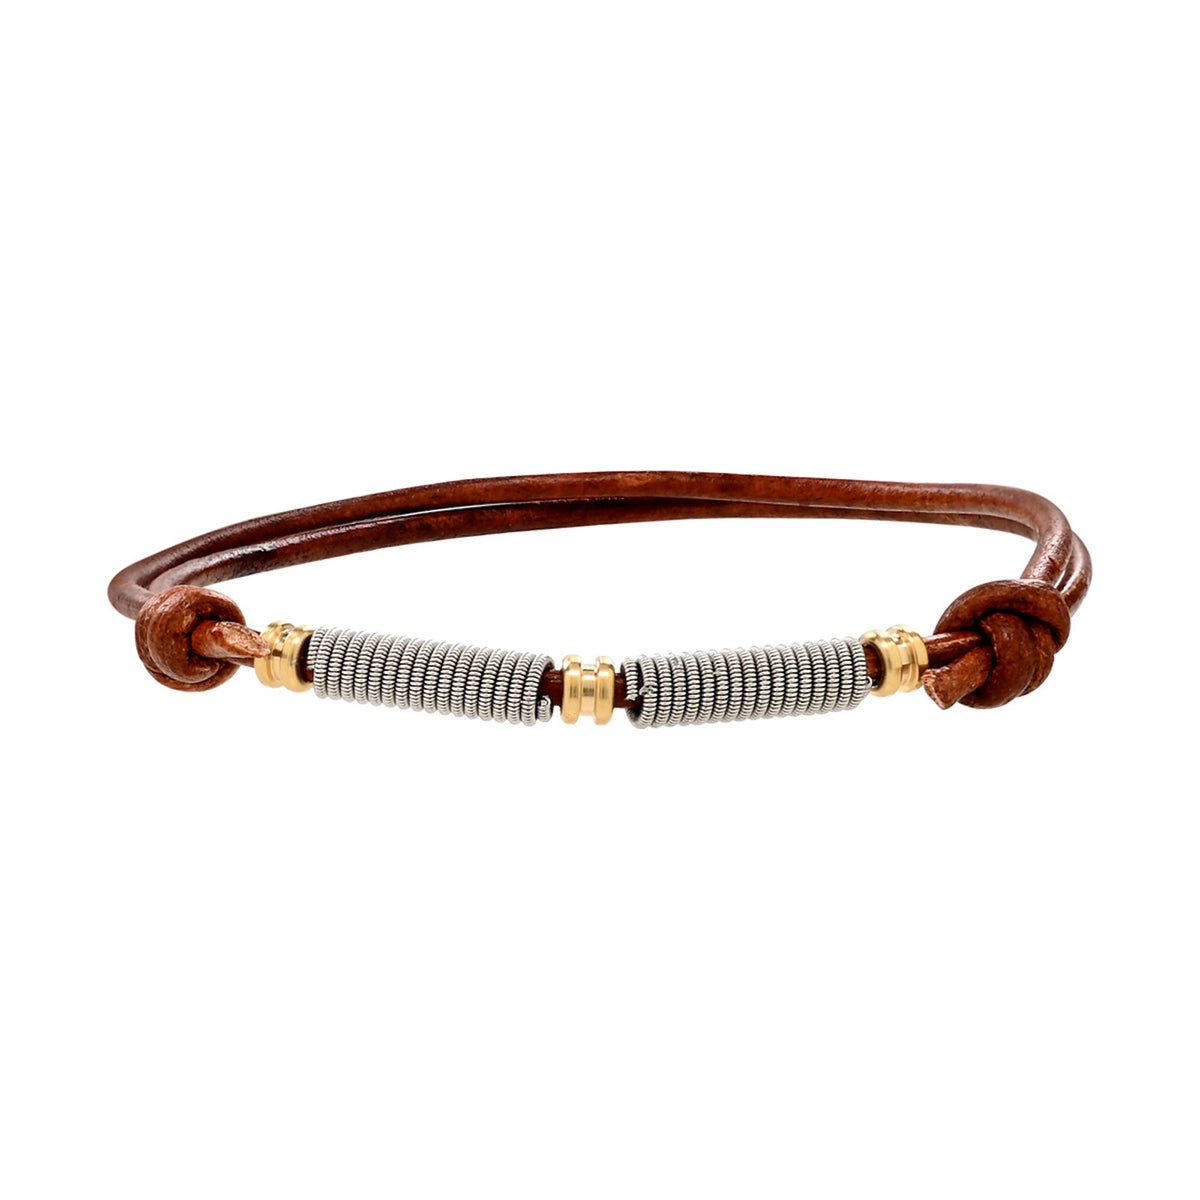 Ball End Slipknot Adjustable Leather Bracelet - Brown